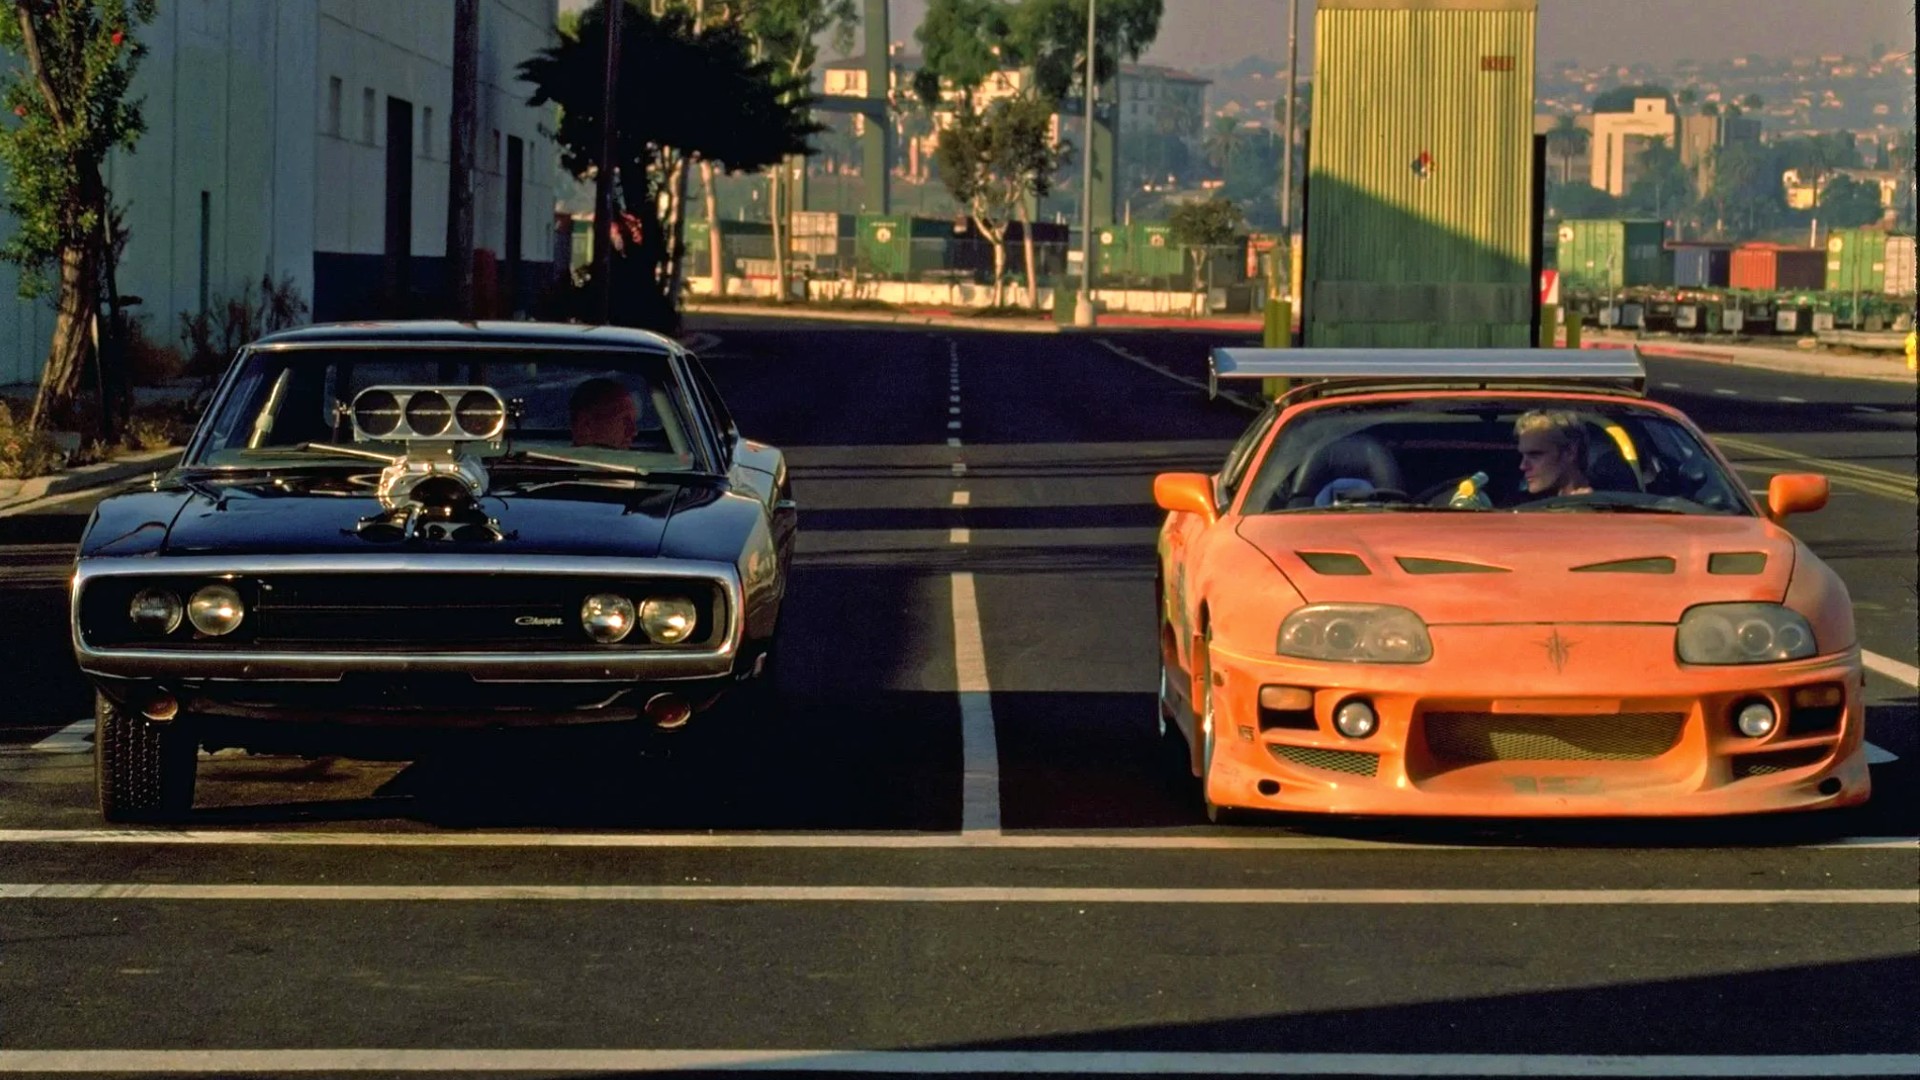 Imagem mostra cena do primeiro filme da saga Velozes e Furiosos, com dois carros, um preto americano e um laranja japonês, prestes a começar uma corrida de rua